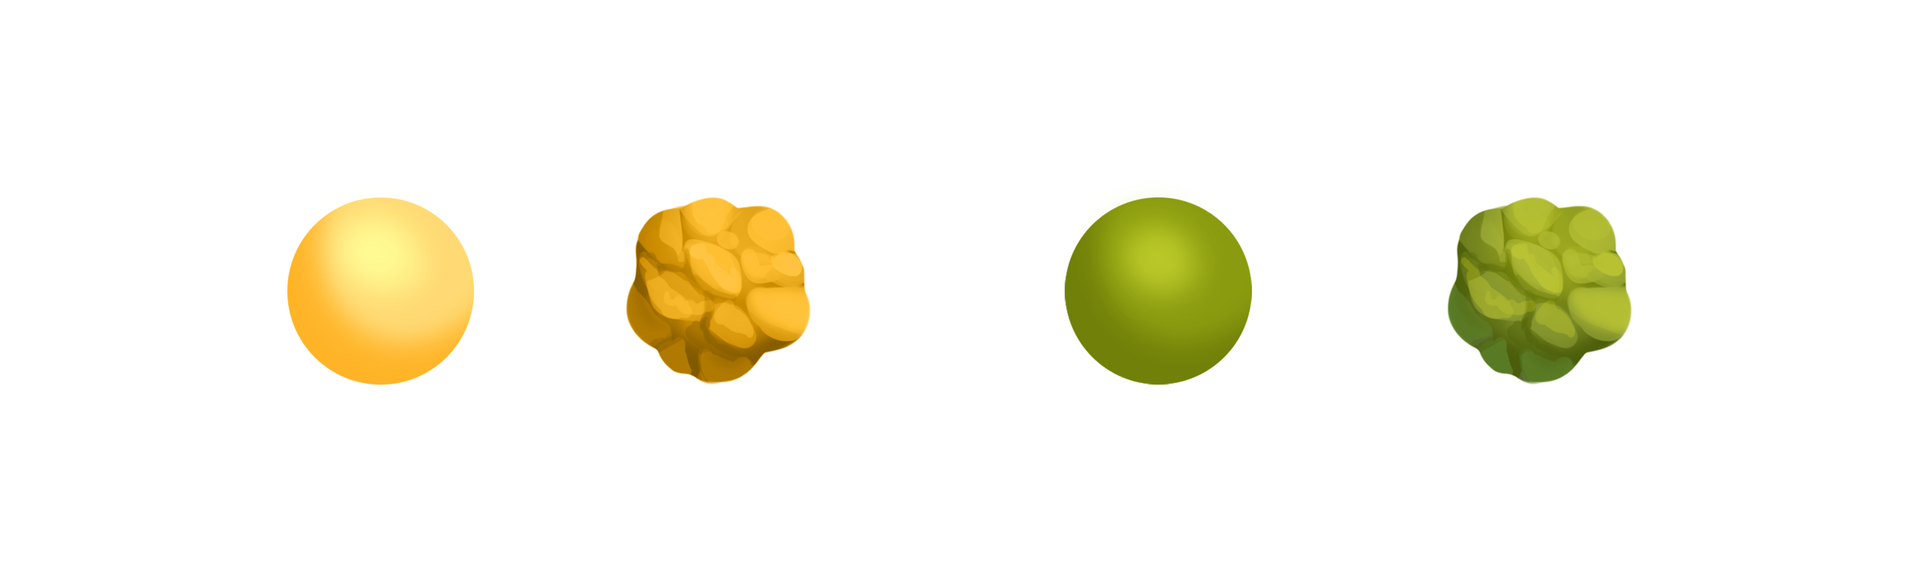 Ilustracja przedstawia cztery fenotypy nasion uzyskane w pokoleniu F2. To żółta kulka, ziarnista żółta kulka, zielona kulka, zielona ziarnista kulka. 